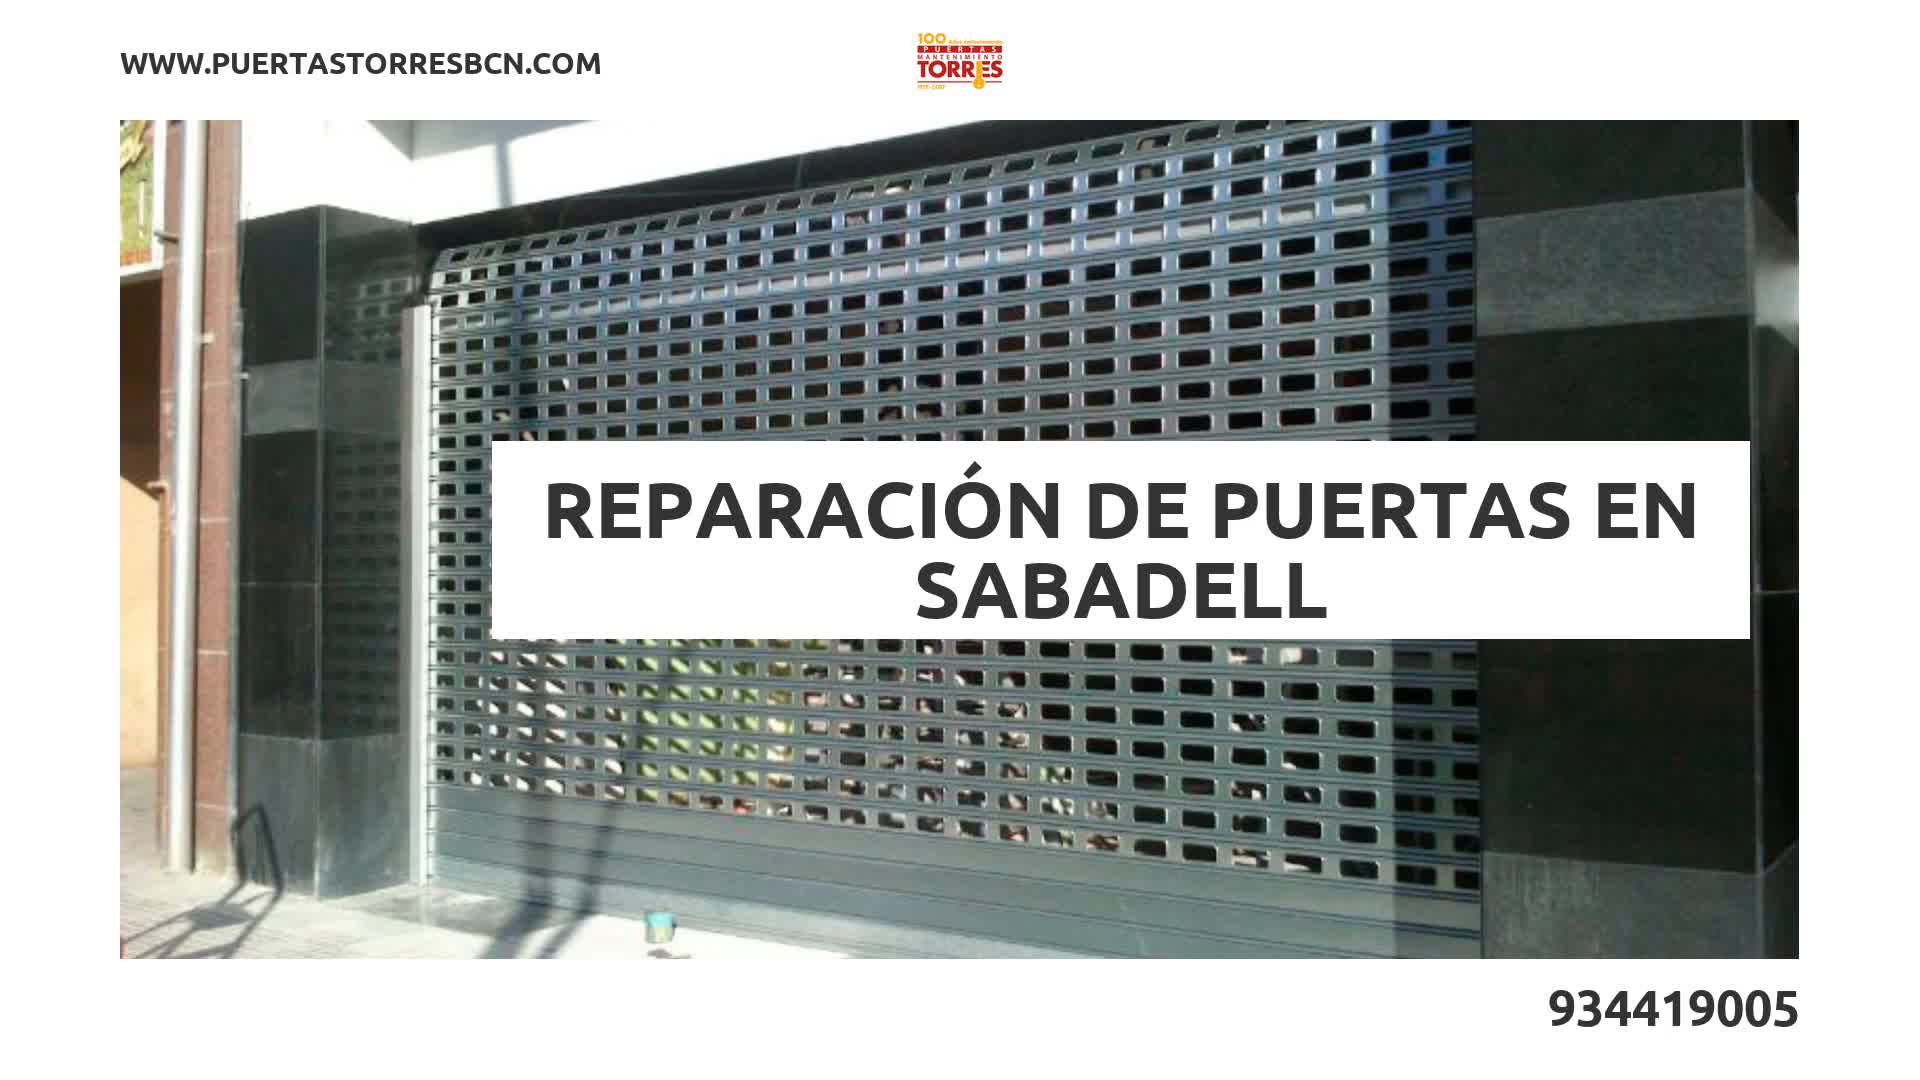 Reparación de puertas Sabadell Puertas Torres